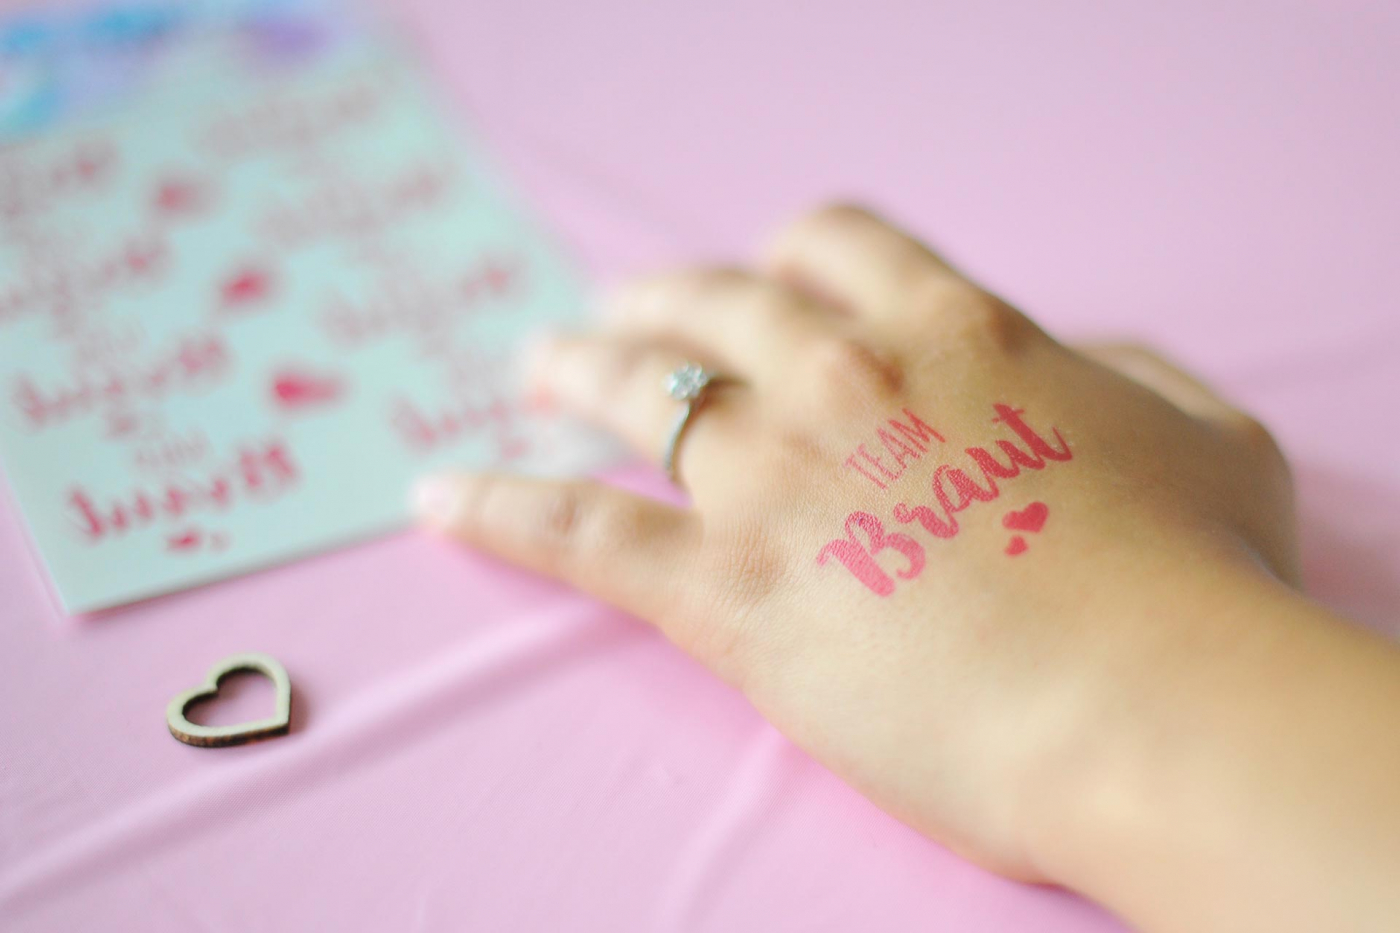 Nahaufnahme einer Hand mit "Team Braut" Tattoo und Verlobungsring, Holzdauerdekoration und Hochzeitstatoos auf rosafarbenem Tisch.